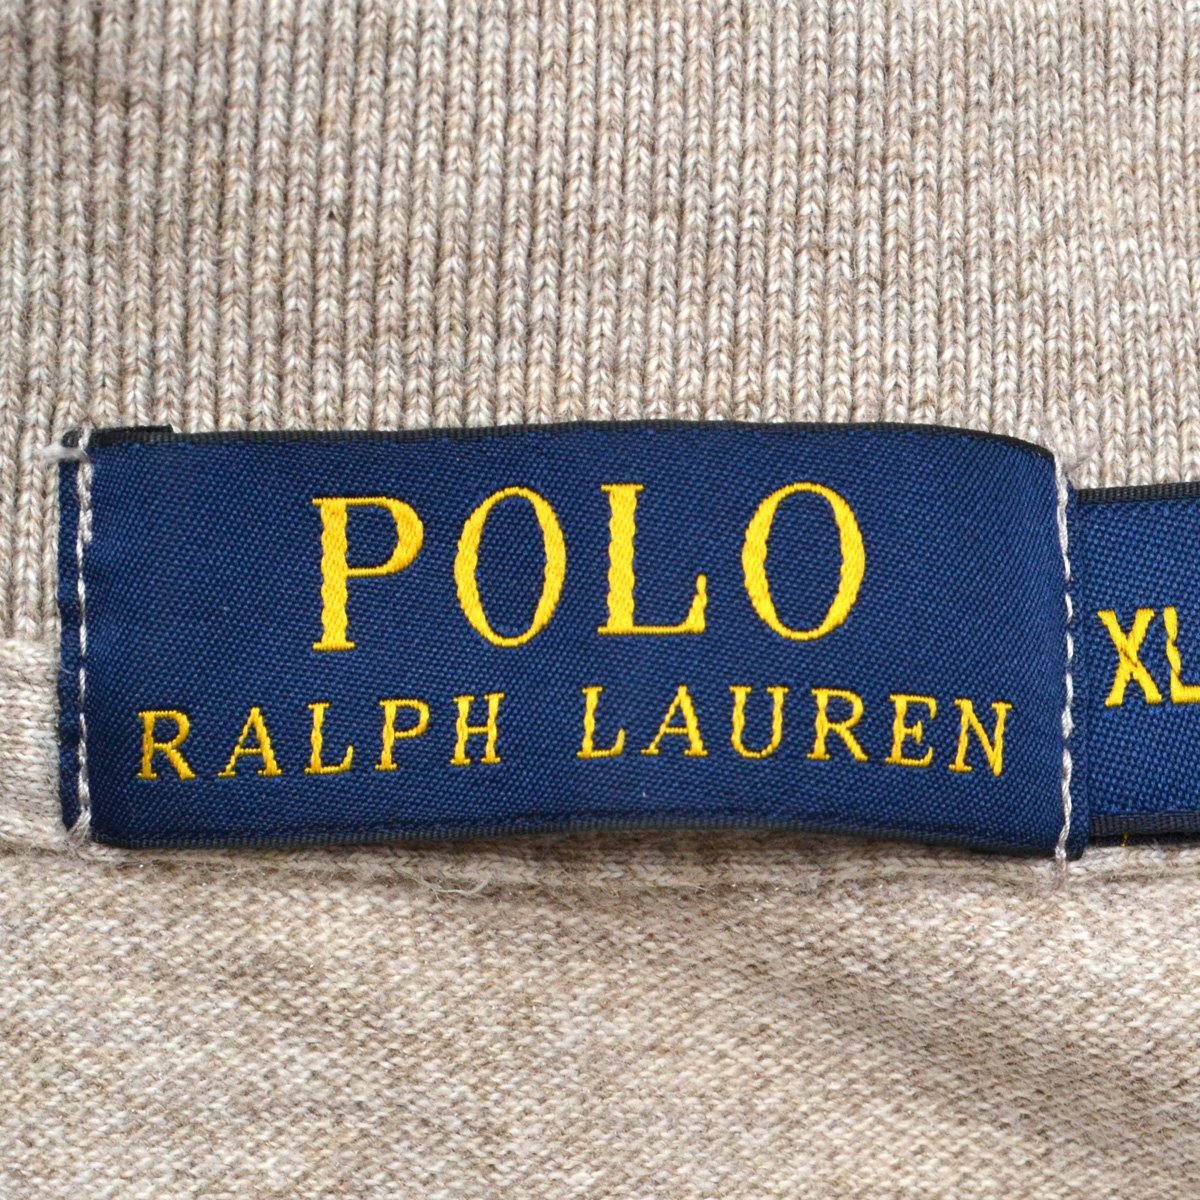 POLO RALPH LAUREN ポロラルフローレン カノコポロシャツ ブラウンポニー刺繍 半袖 トップス XLサイズ メンズ M790415の画像5